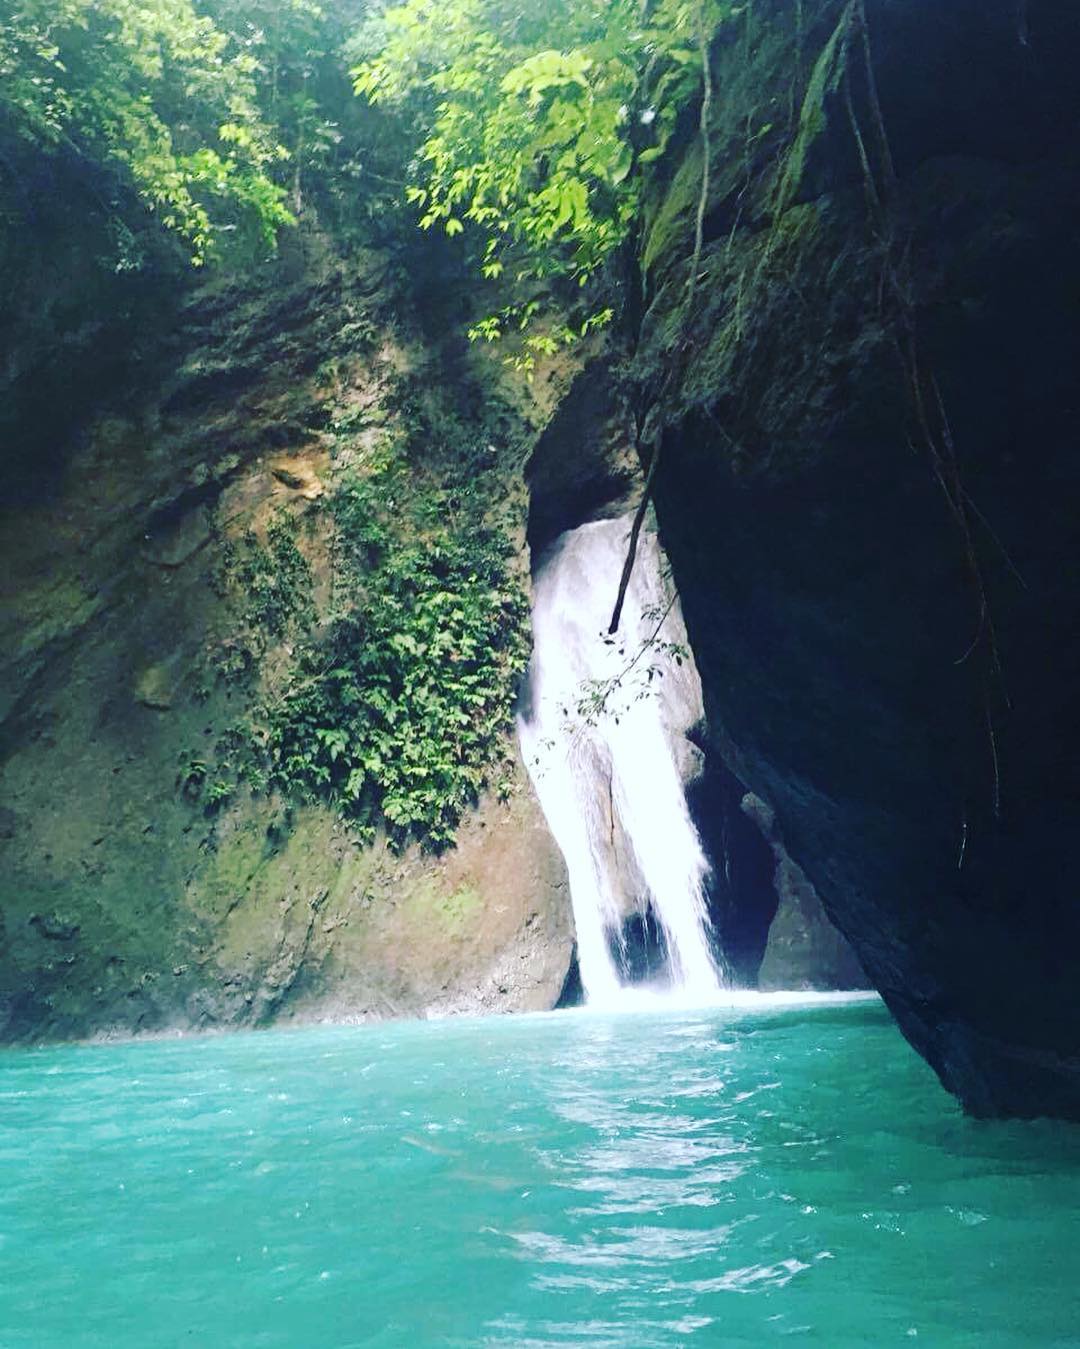 Kabutongan Waterfalls, Cebu - Entrance to the hidden cave